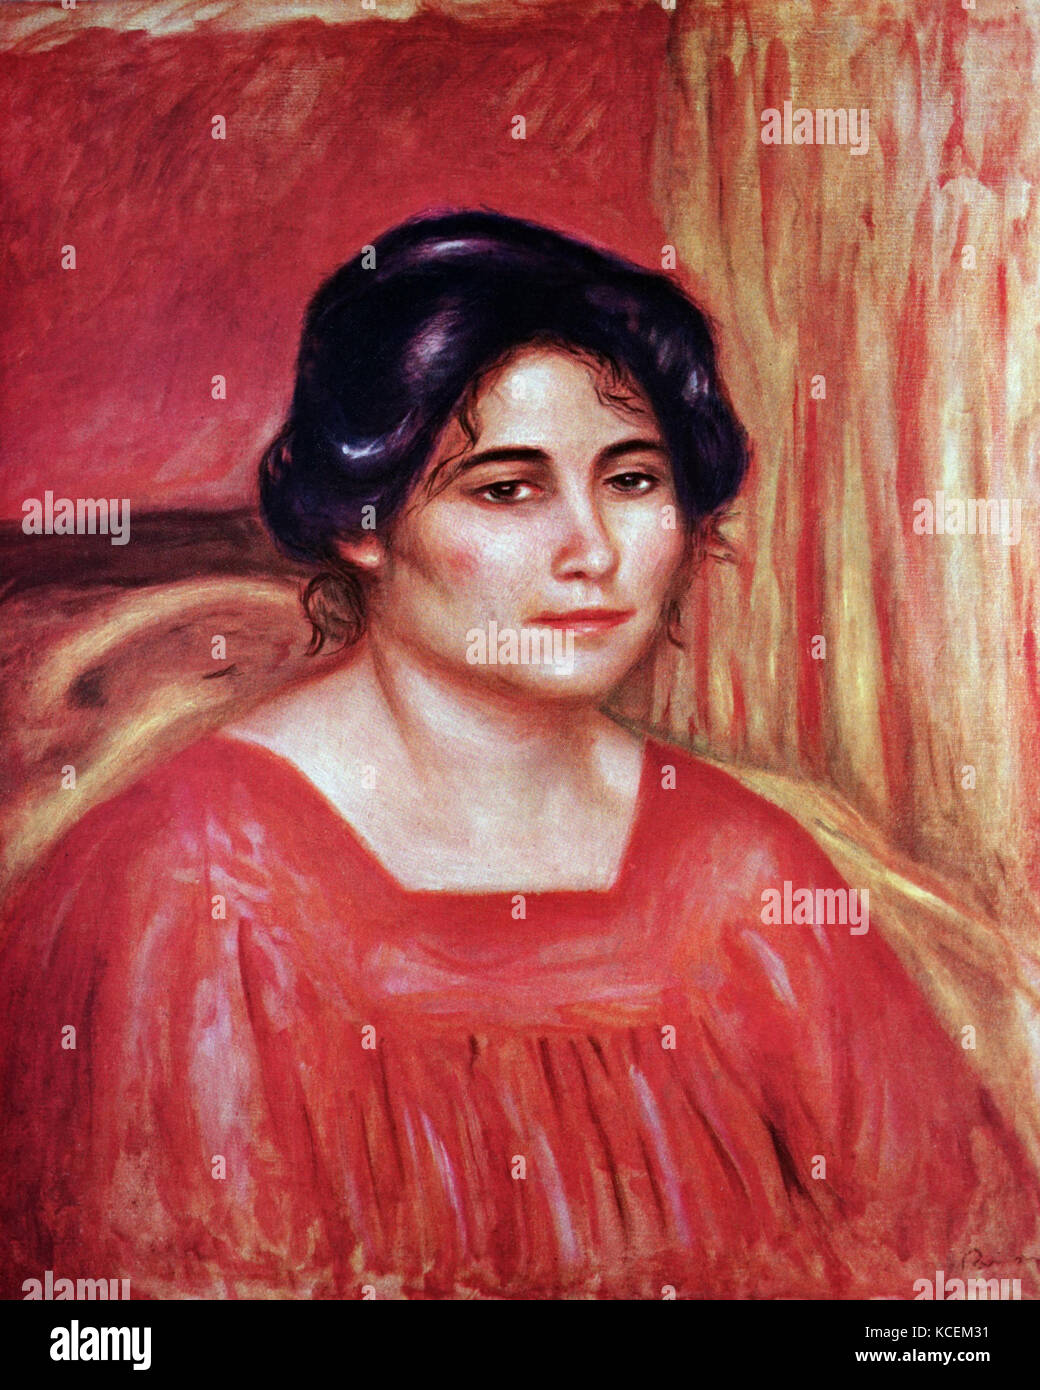 Pittura intitolata 'Gabrielle in una camicetta rossa' di Pierre-Auguste Renoir (1841-1919) un artista francese di stile impressionista. In data xx secolo Foto Stock